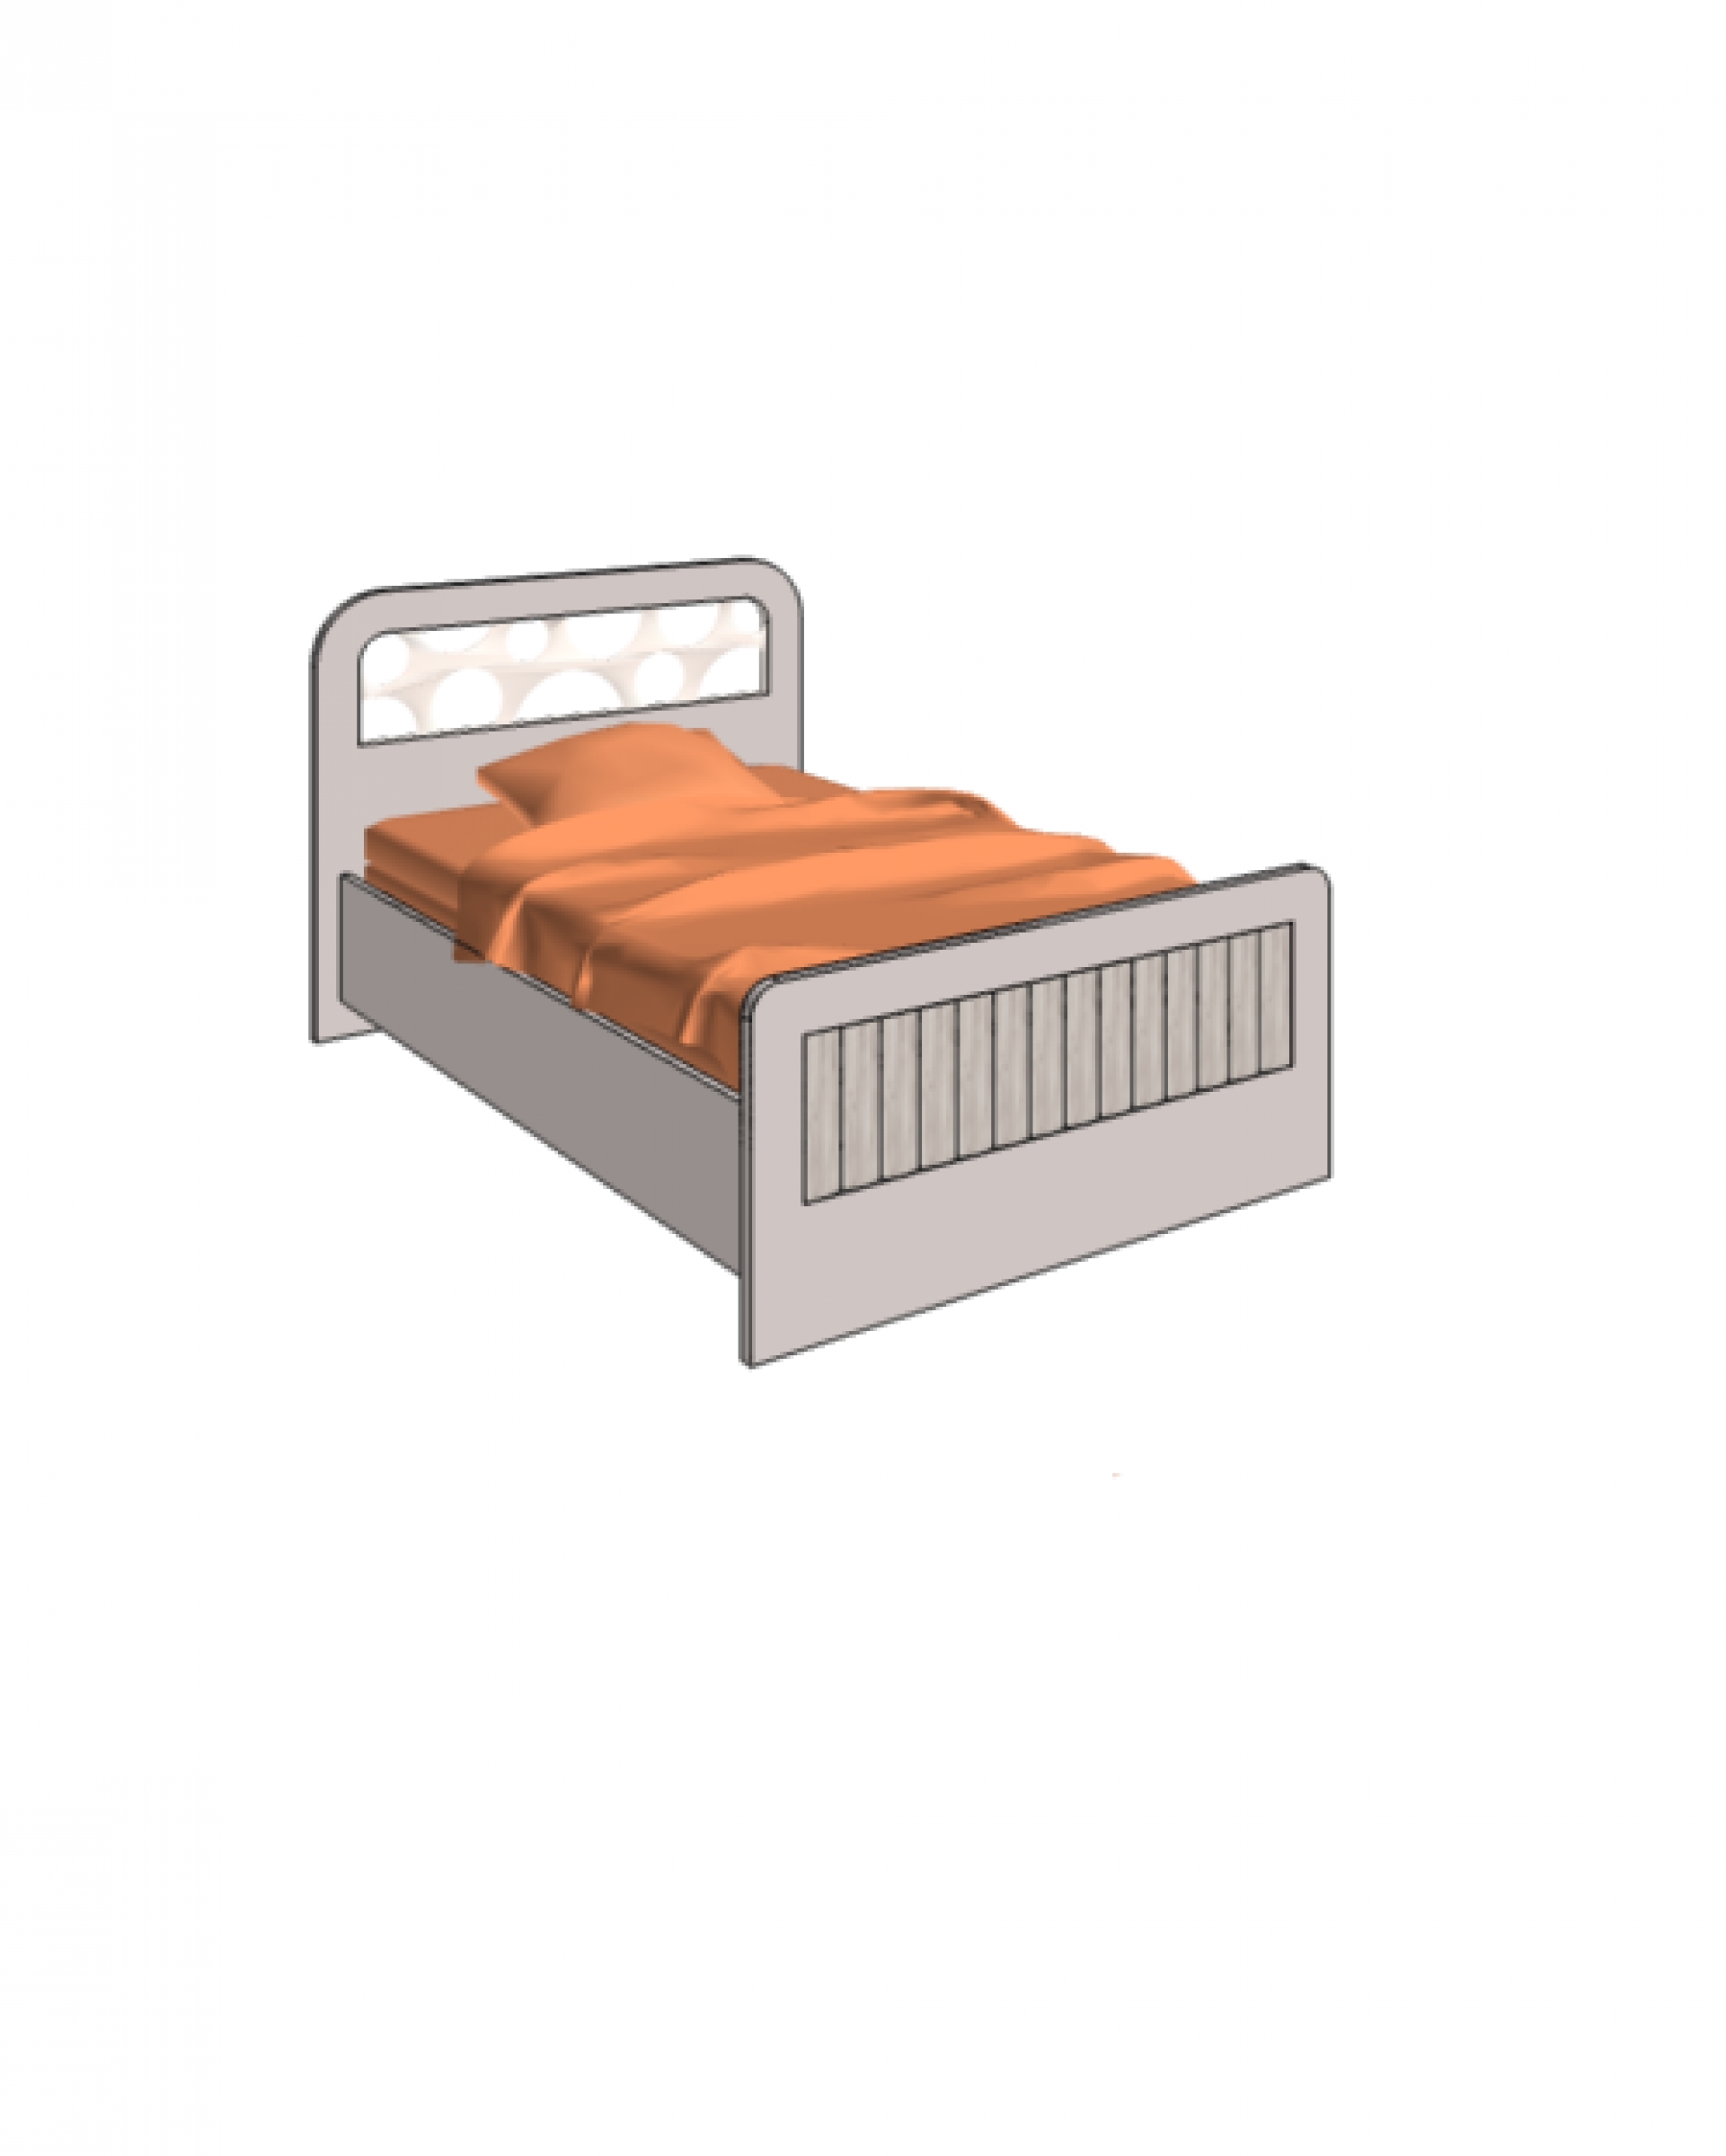 Klюkva кровать отдельностоящая с коробами и подъемным механизмом. арт: VB2_10